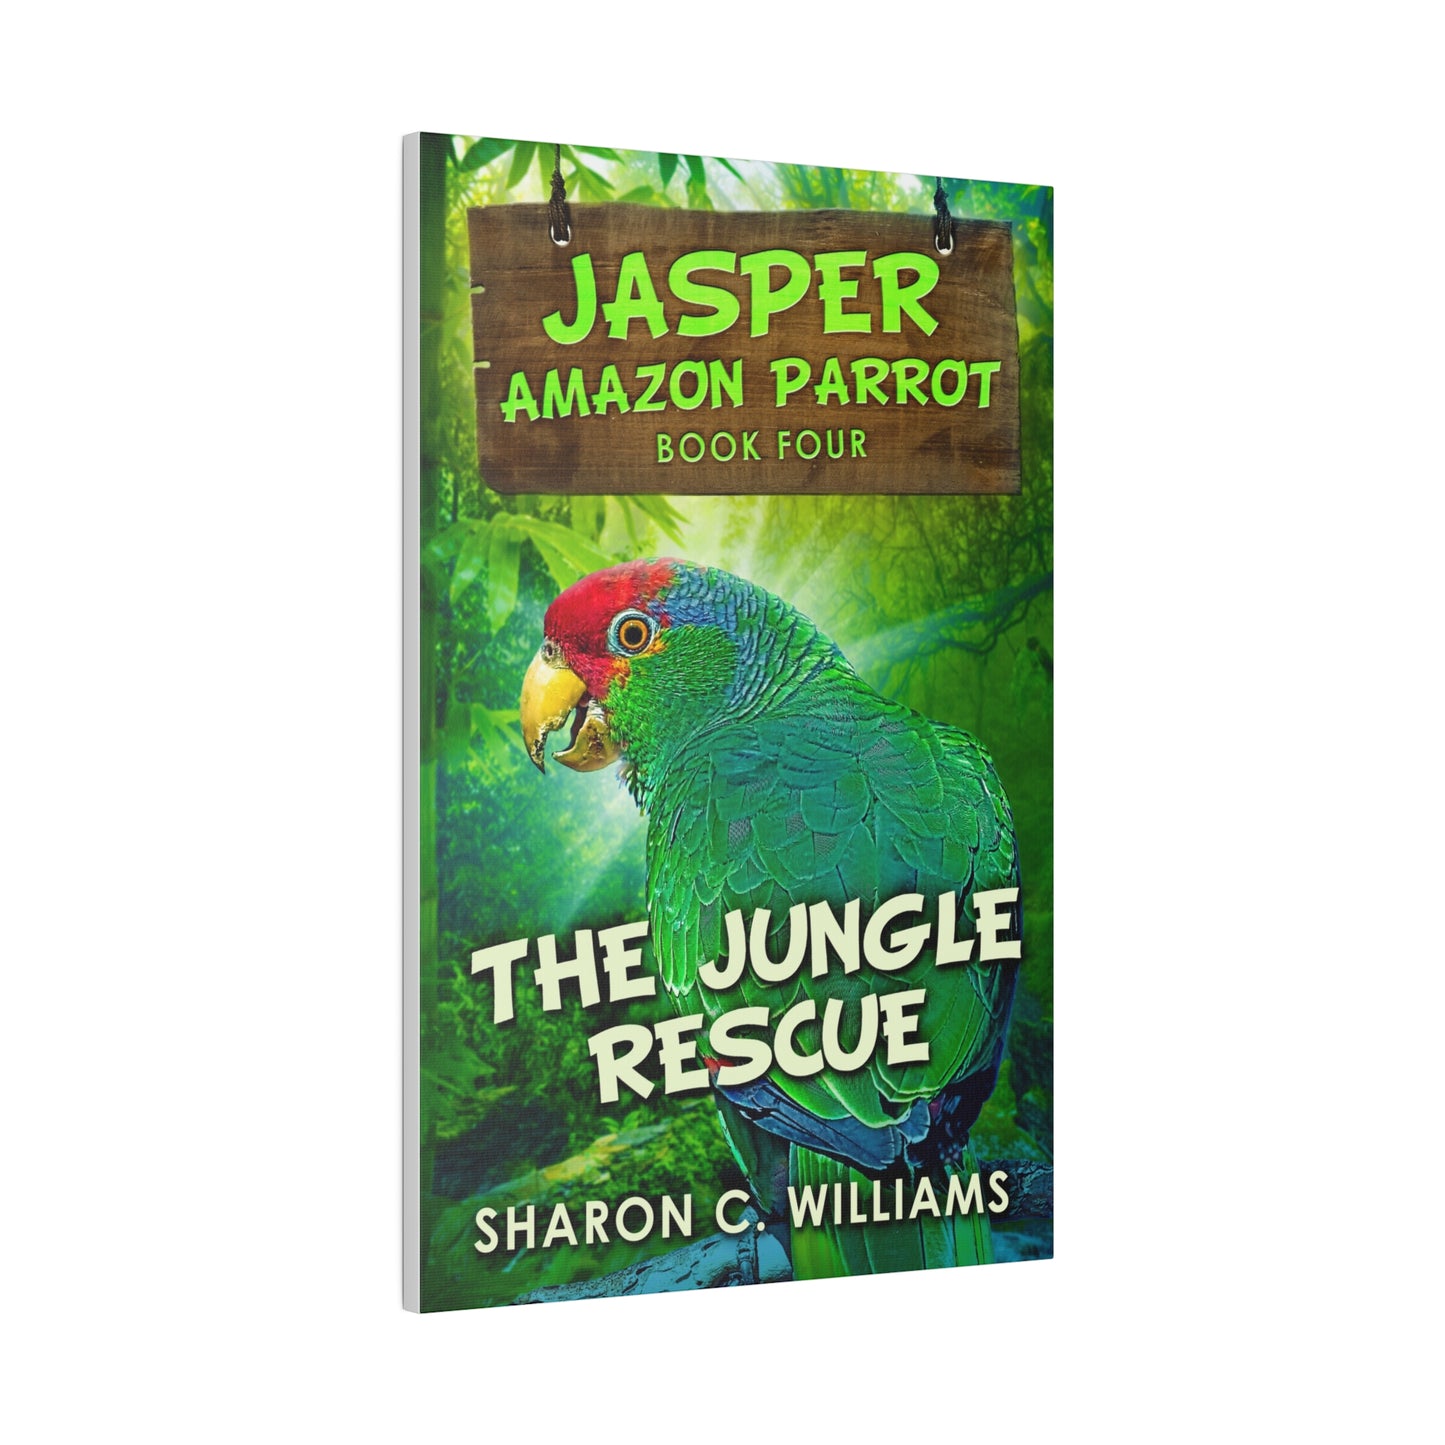 The Jungle Rescue - Canvas